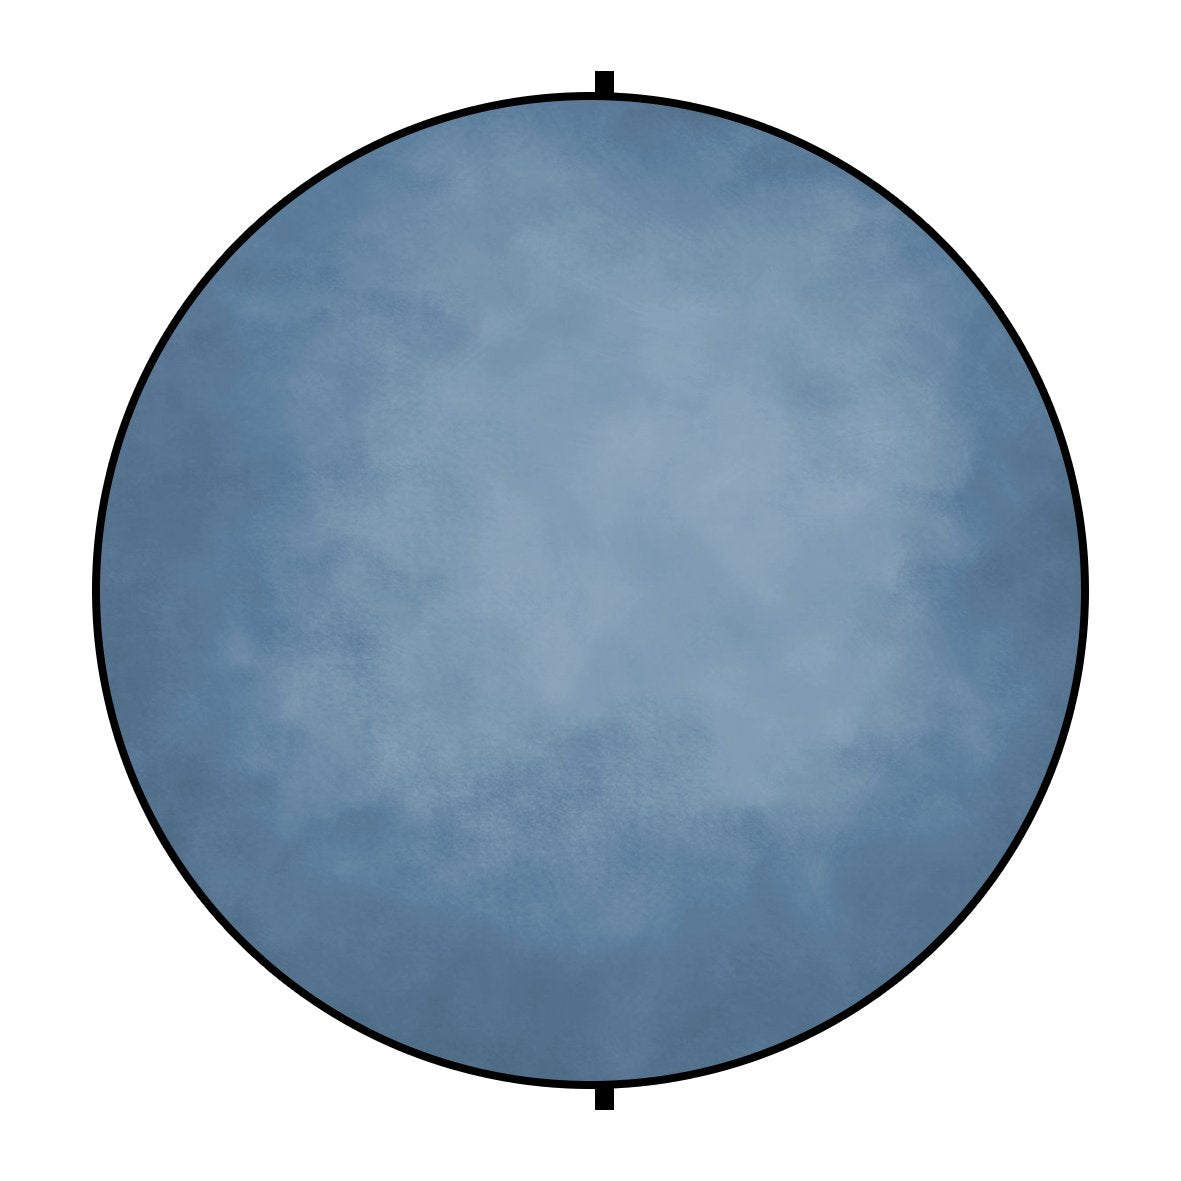 Kate Double-face Rond Abstrait Gris/Bleu Photographie Toile de fond Pliable 5x5pi(1.5x1.5m)